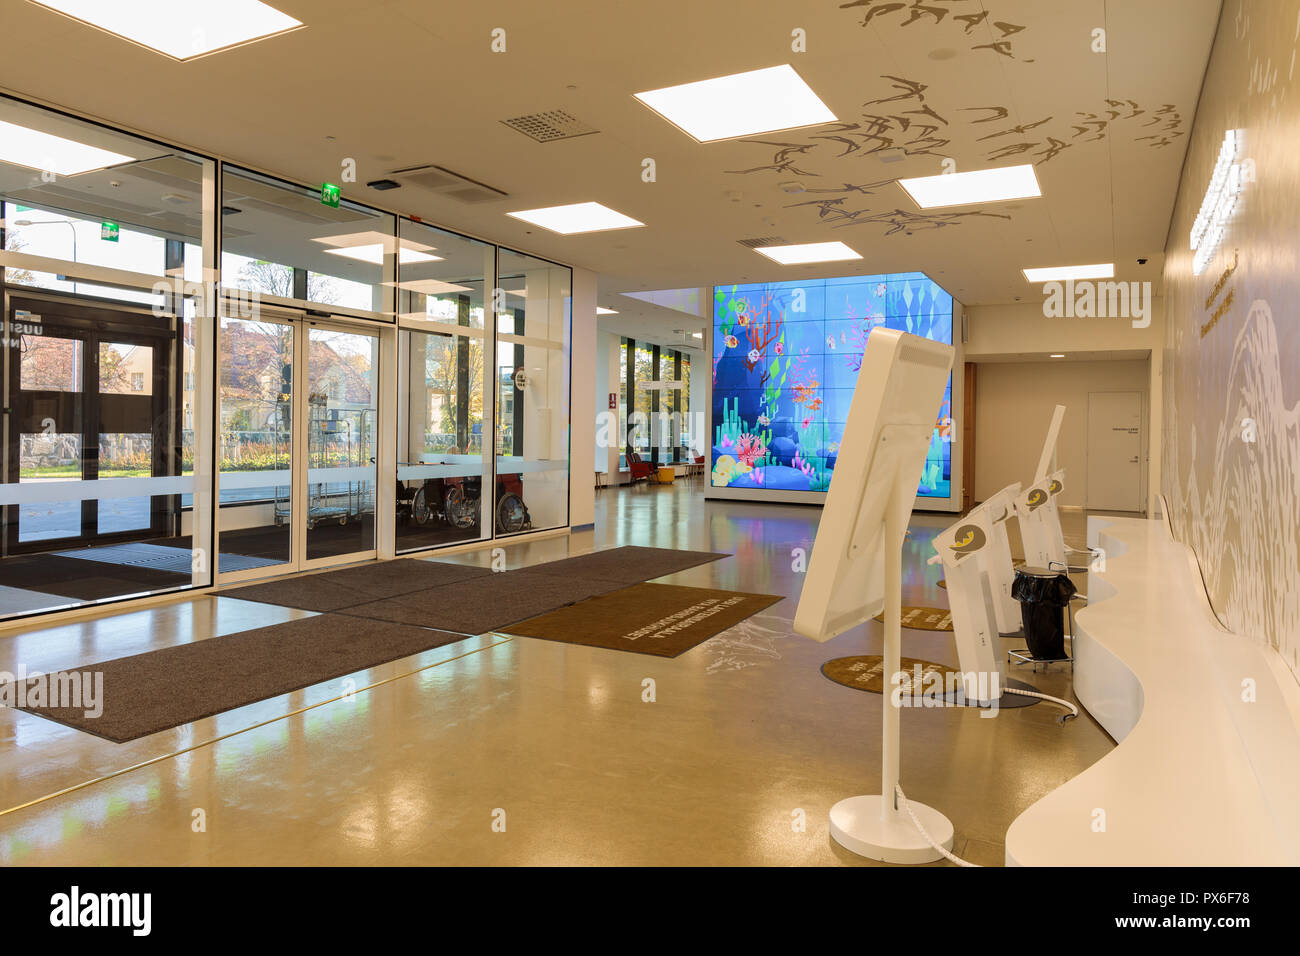 Helsinki Nuovo Ospedale per bambini aperti per i pazienti il 17 settembre 2018. L'edificio ha facciata colorata e lobby con schermi interattivi. Foto Stock